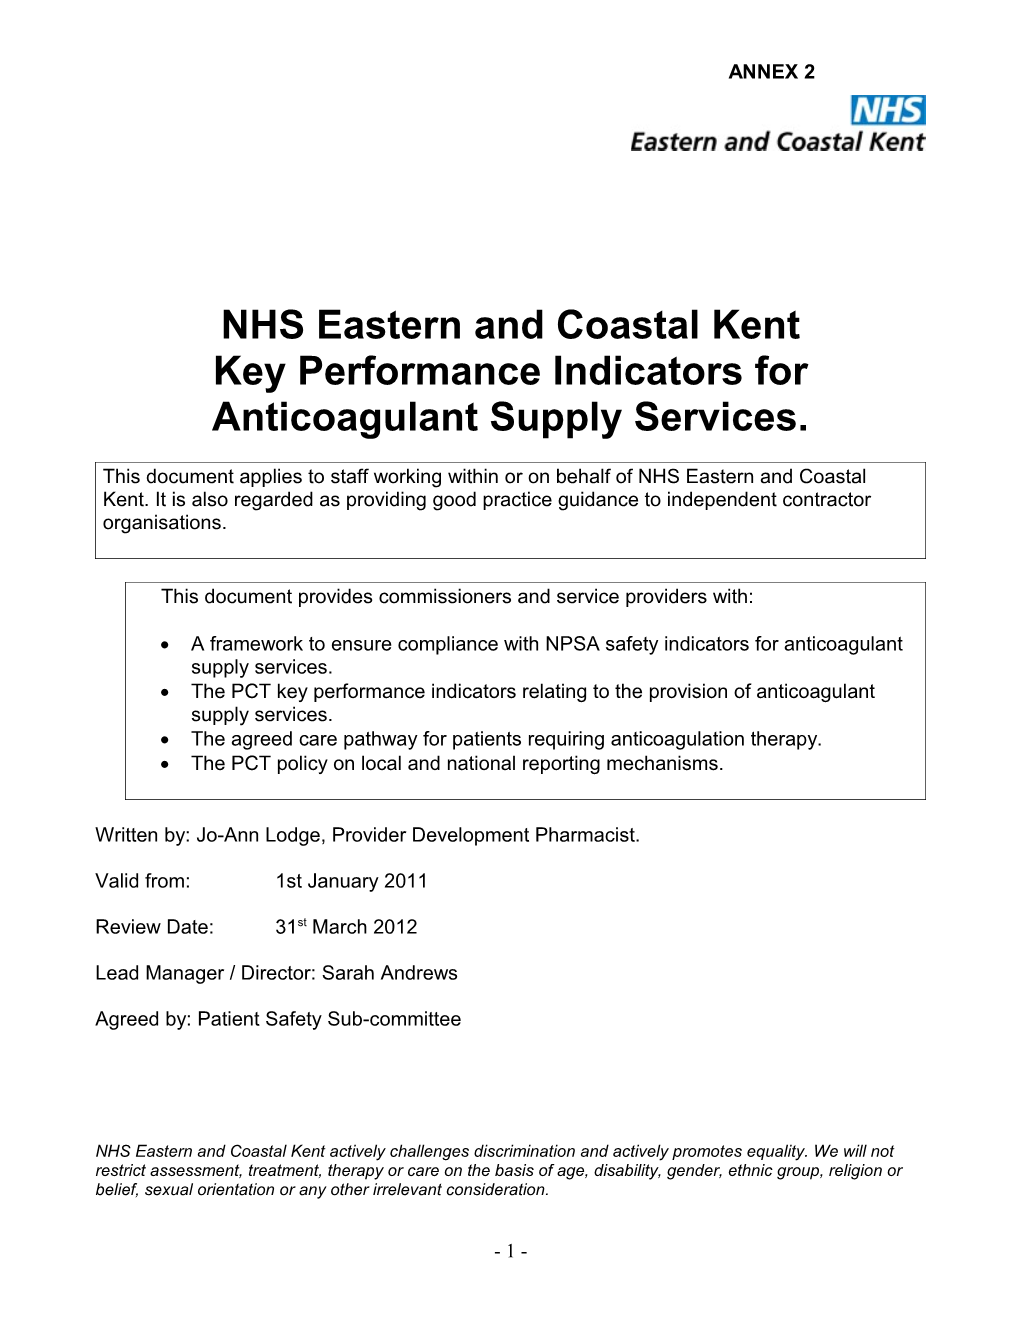 NHS Eastern and Coastal Kent